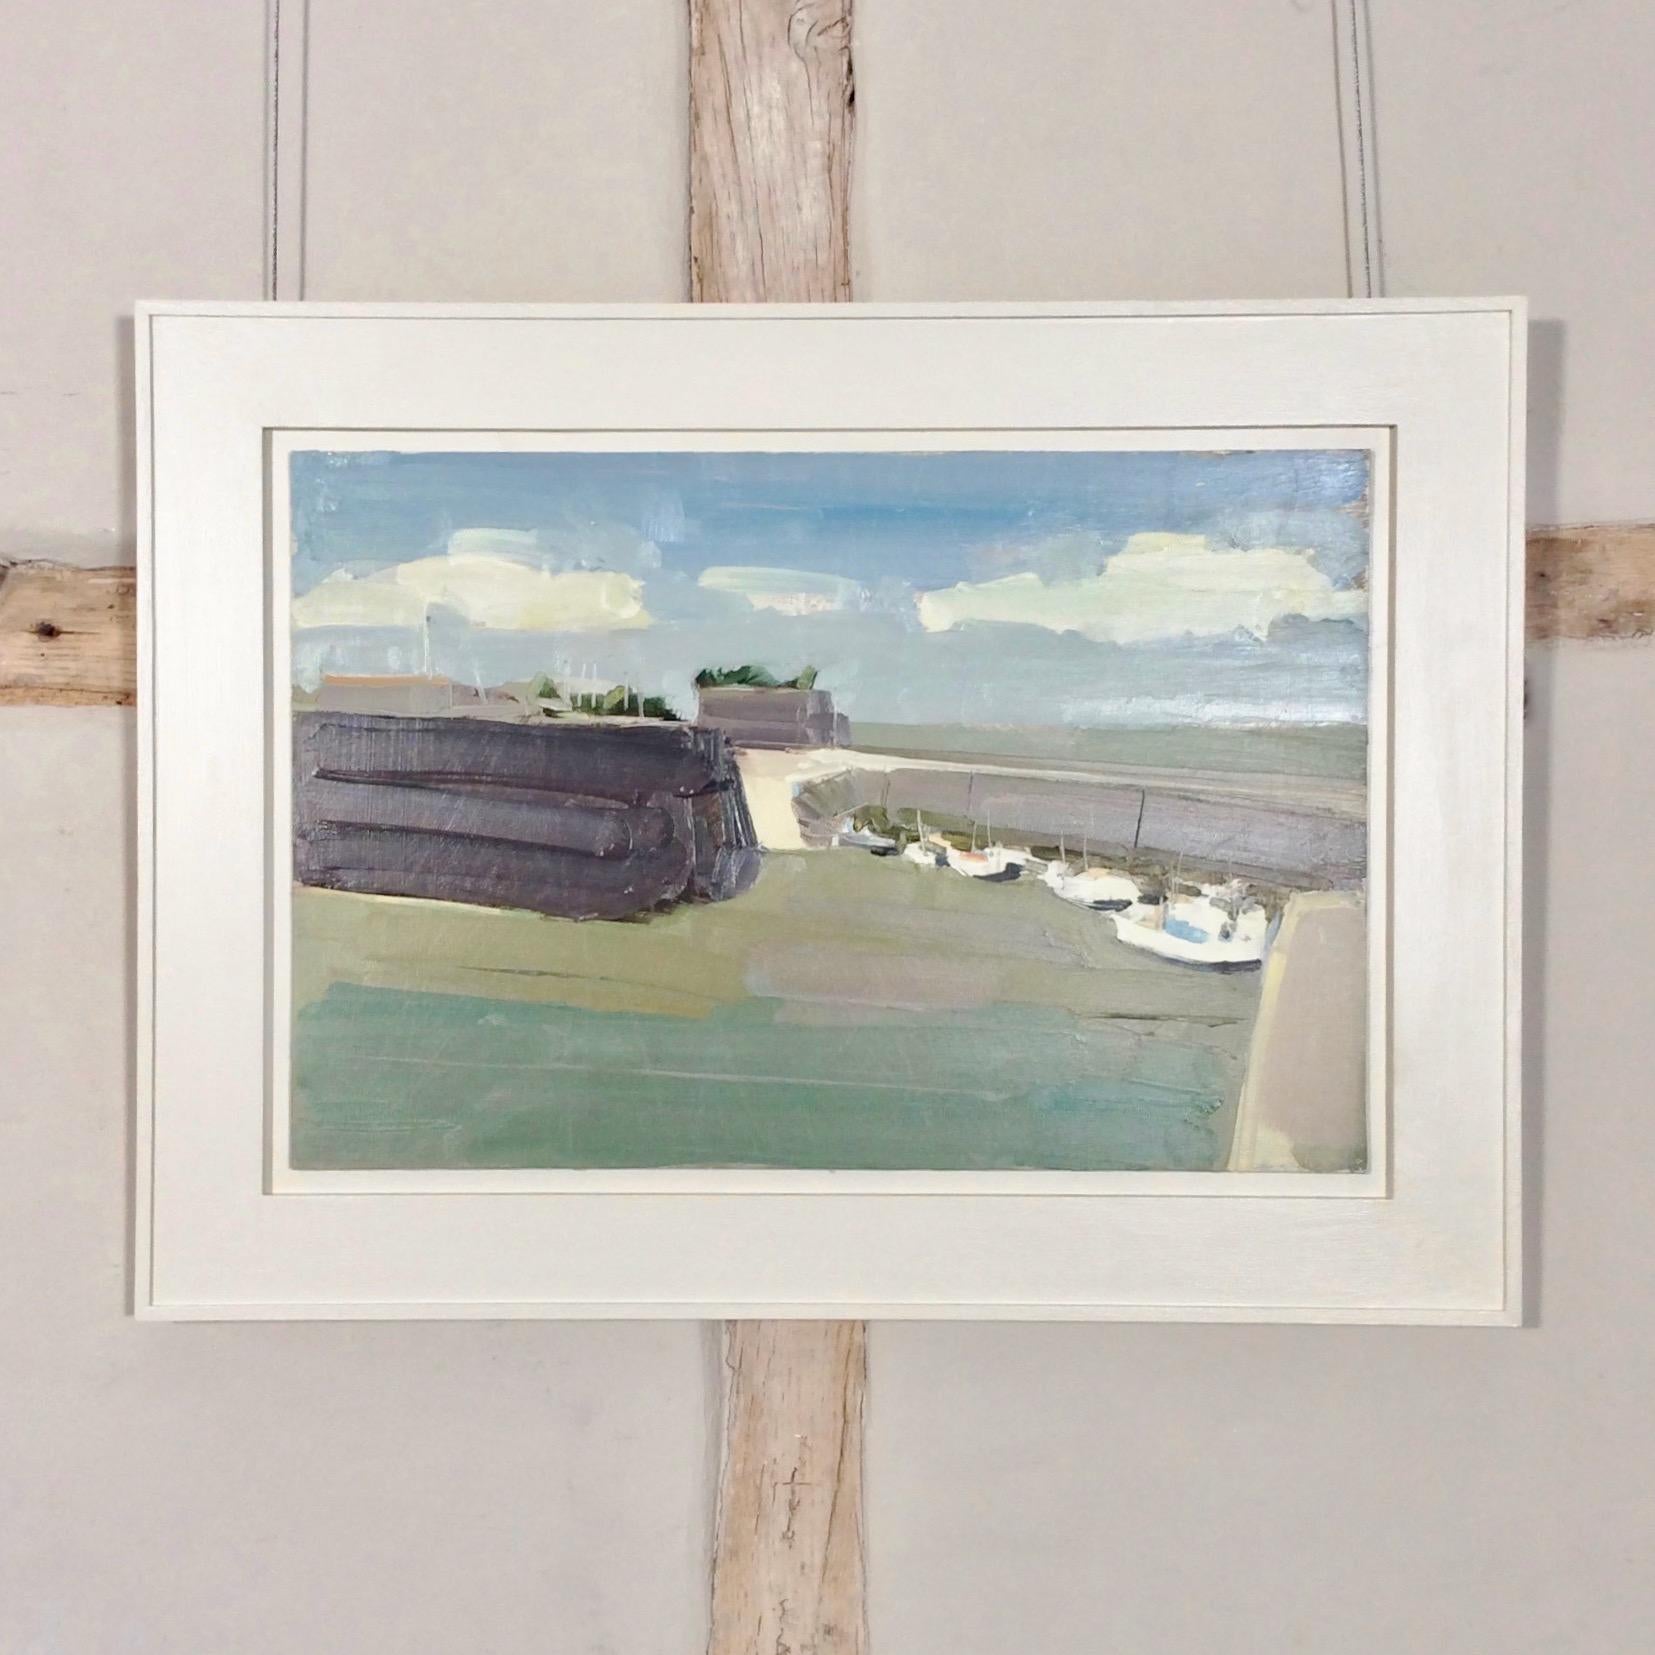 Saint-Martin-de-Ré II, Stephen Palmer. Boats in French harbour, Île de Ré coast - Painting by Stephen palmer